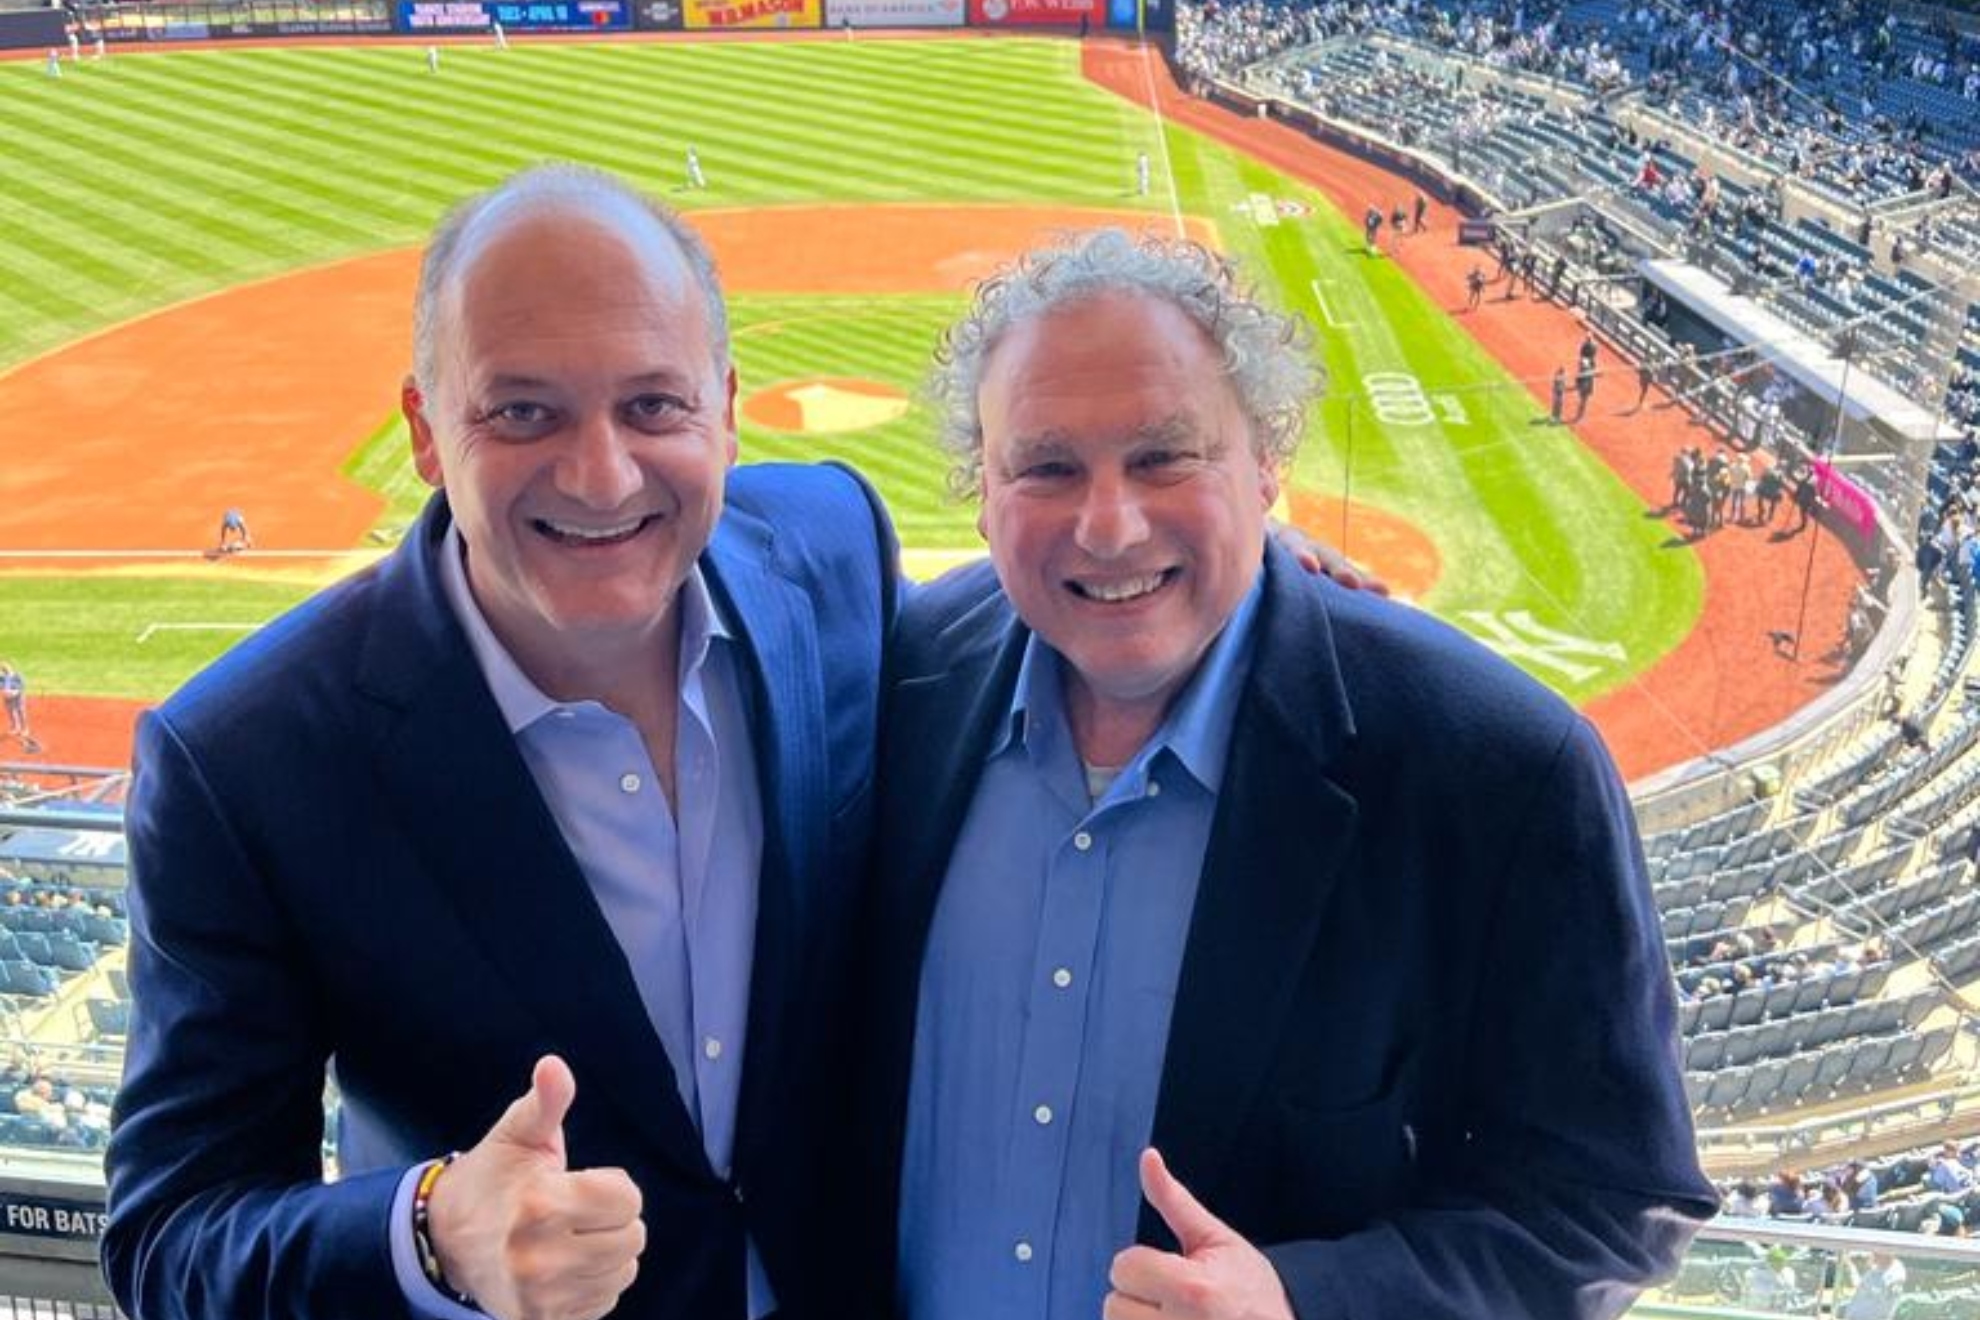 Fabrice Pastor, dueño de A1 Padel, junto a Randy L. Levine, presidente de los New York Yankees.